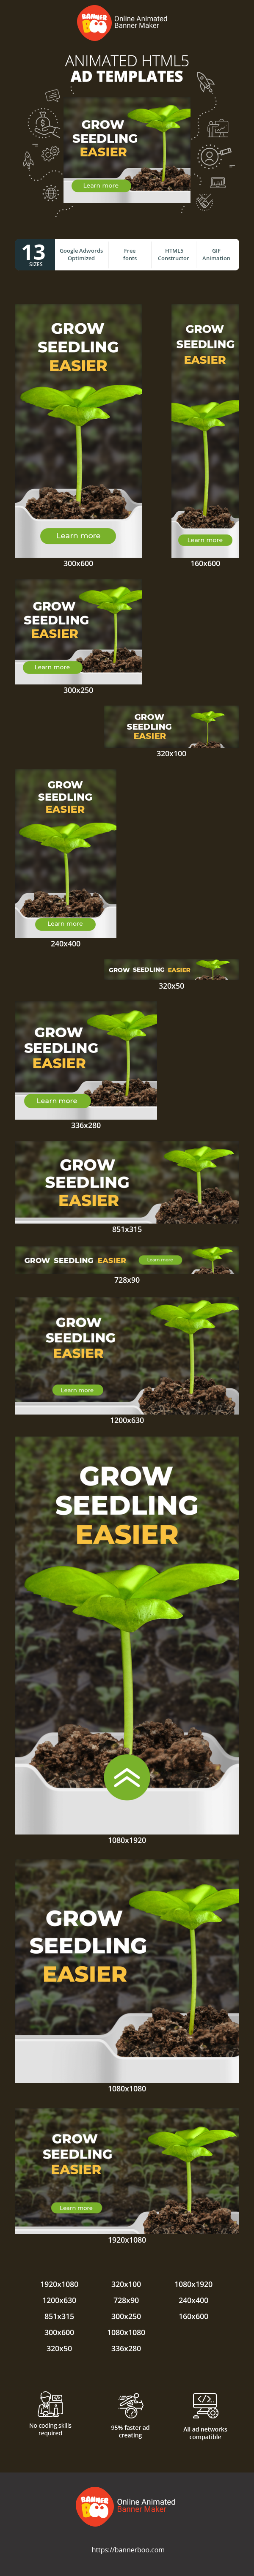 Шаблон рекламного банера — Grow Seedling Easier — Agriculture